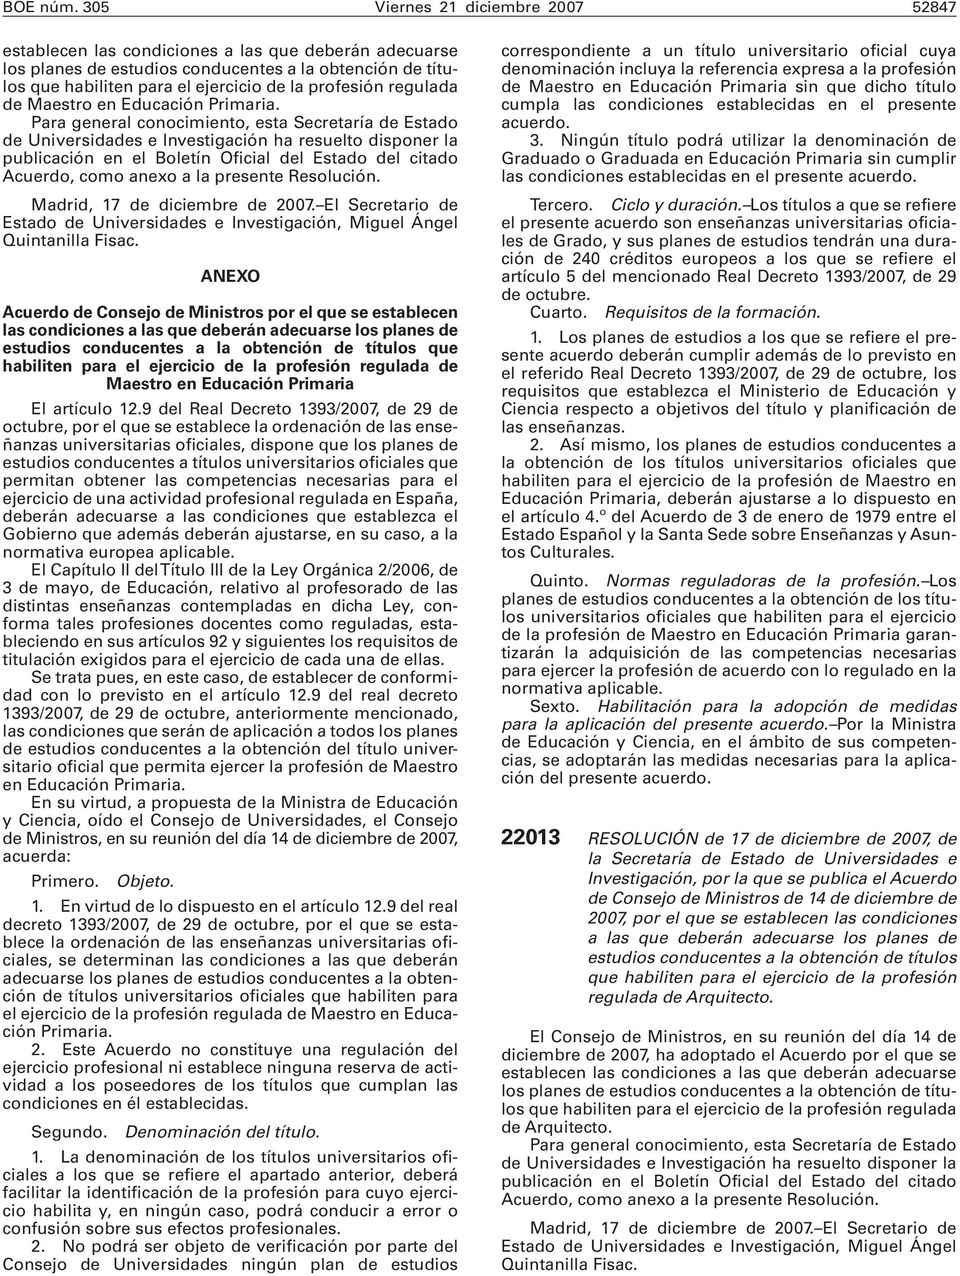 Resolución. Madrid, 17 de diciembre de 2007. El Secretario de Estado de Universidades e Investigación, Miguel Ángel Quintanilla Fisac.